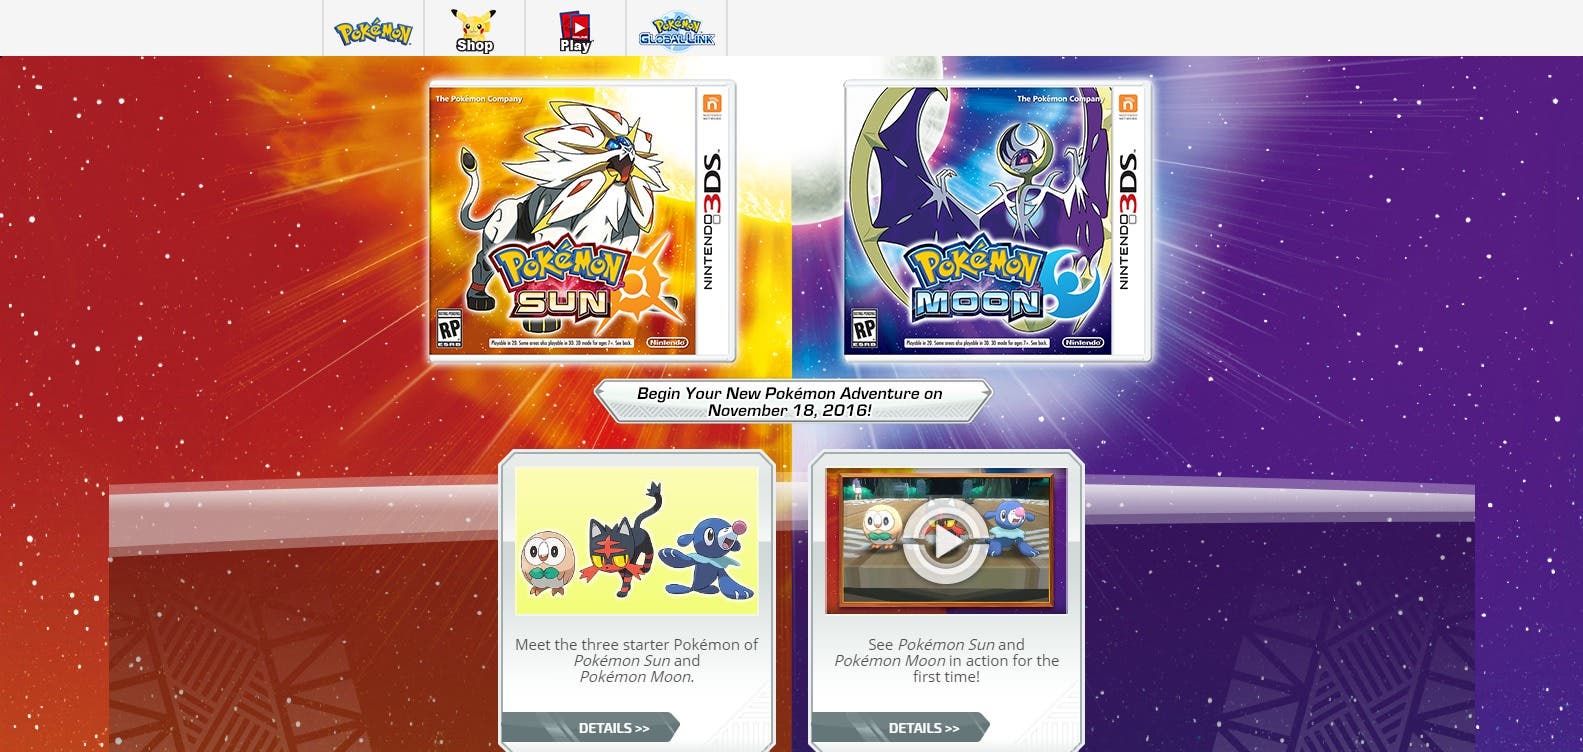 ‘Pokémon Sol y Luna’ ya tiene su sitio web oficial